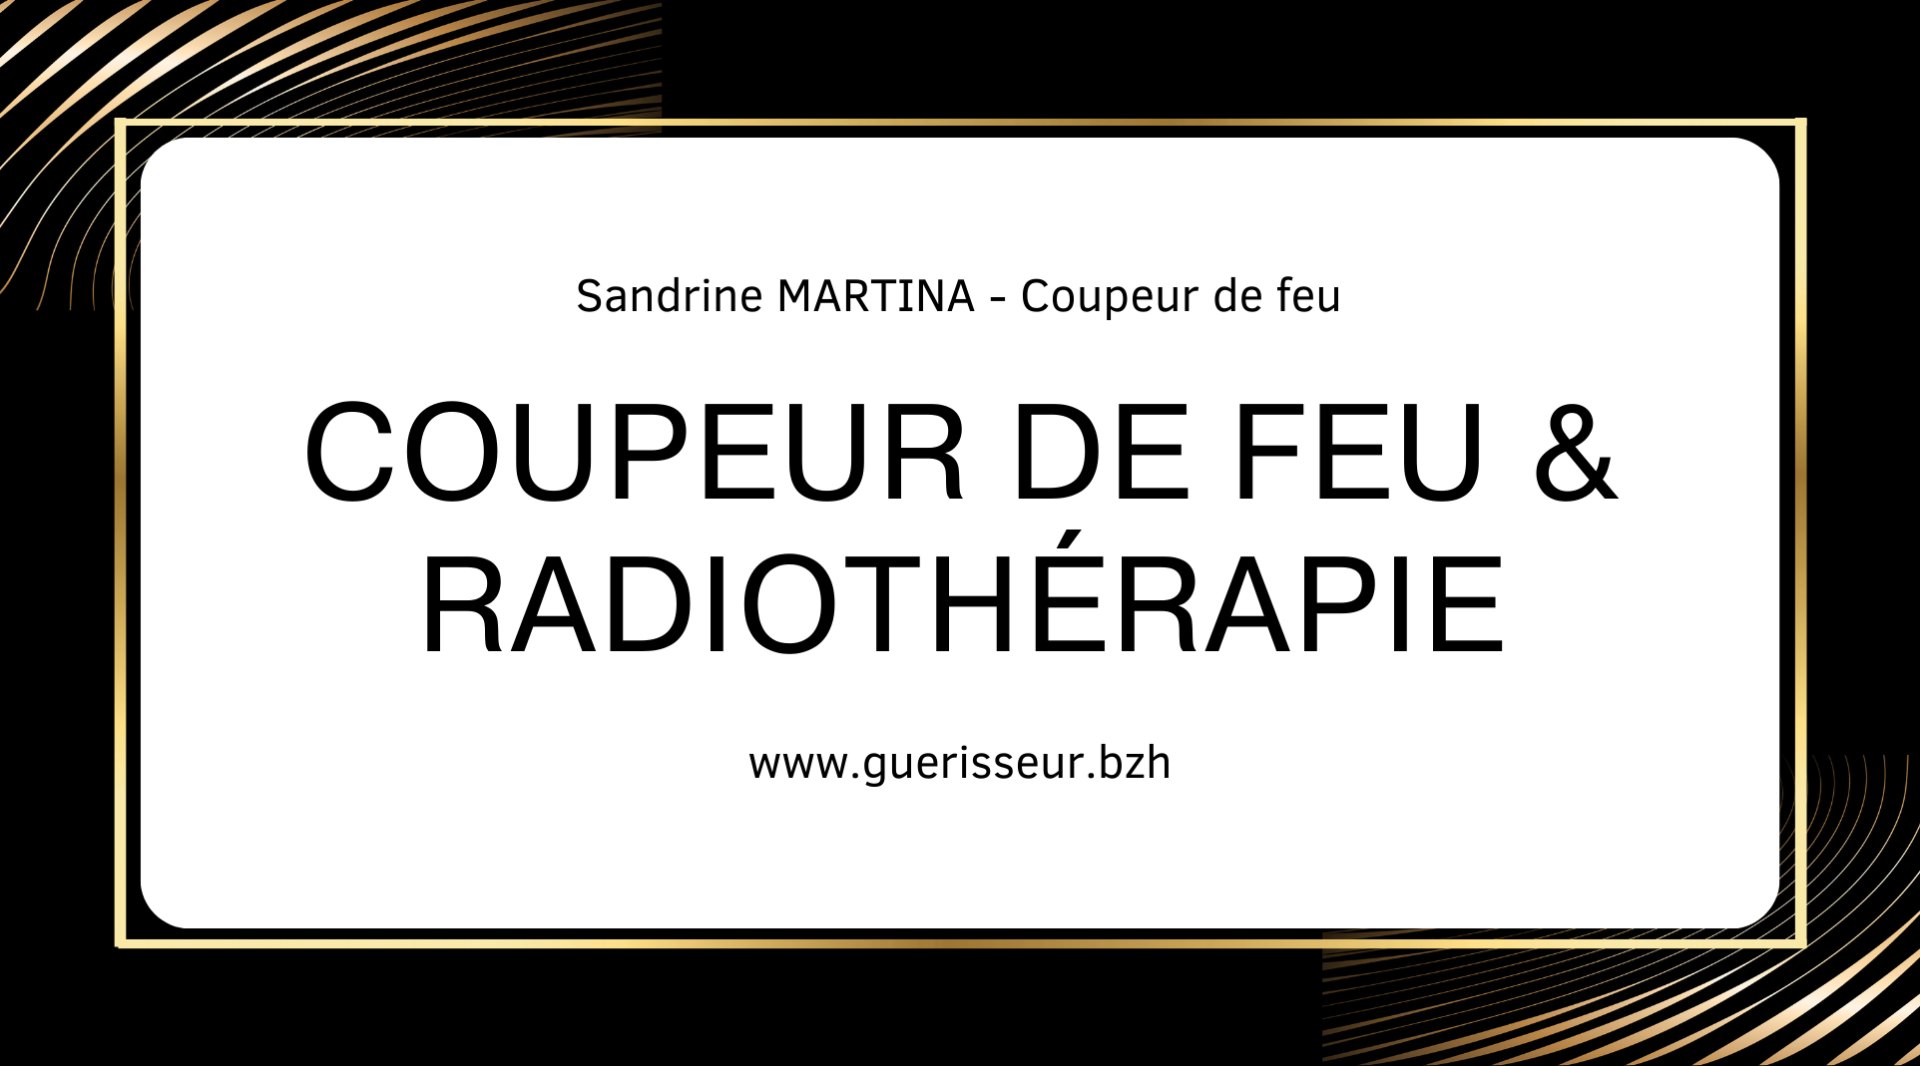 Coupeur de feu radiotherapie sandrine martina 01 ph 2